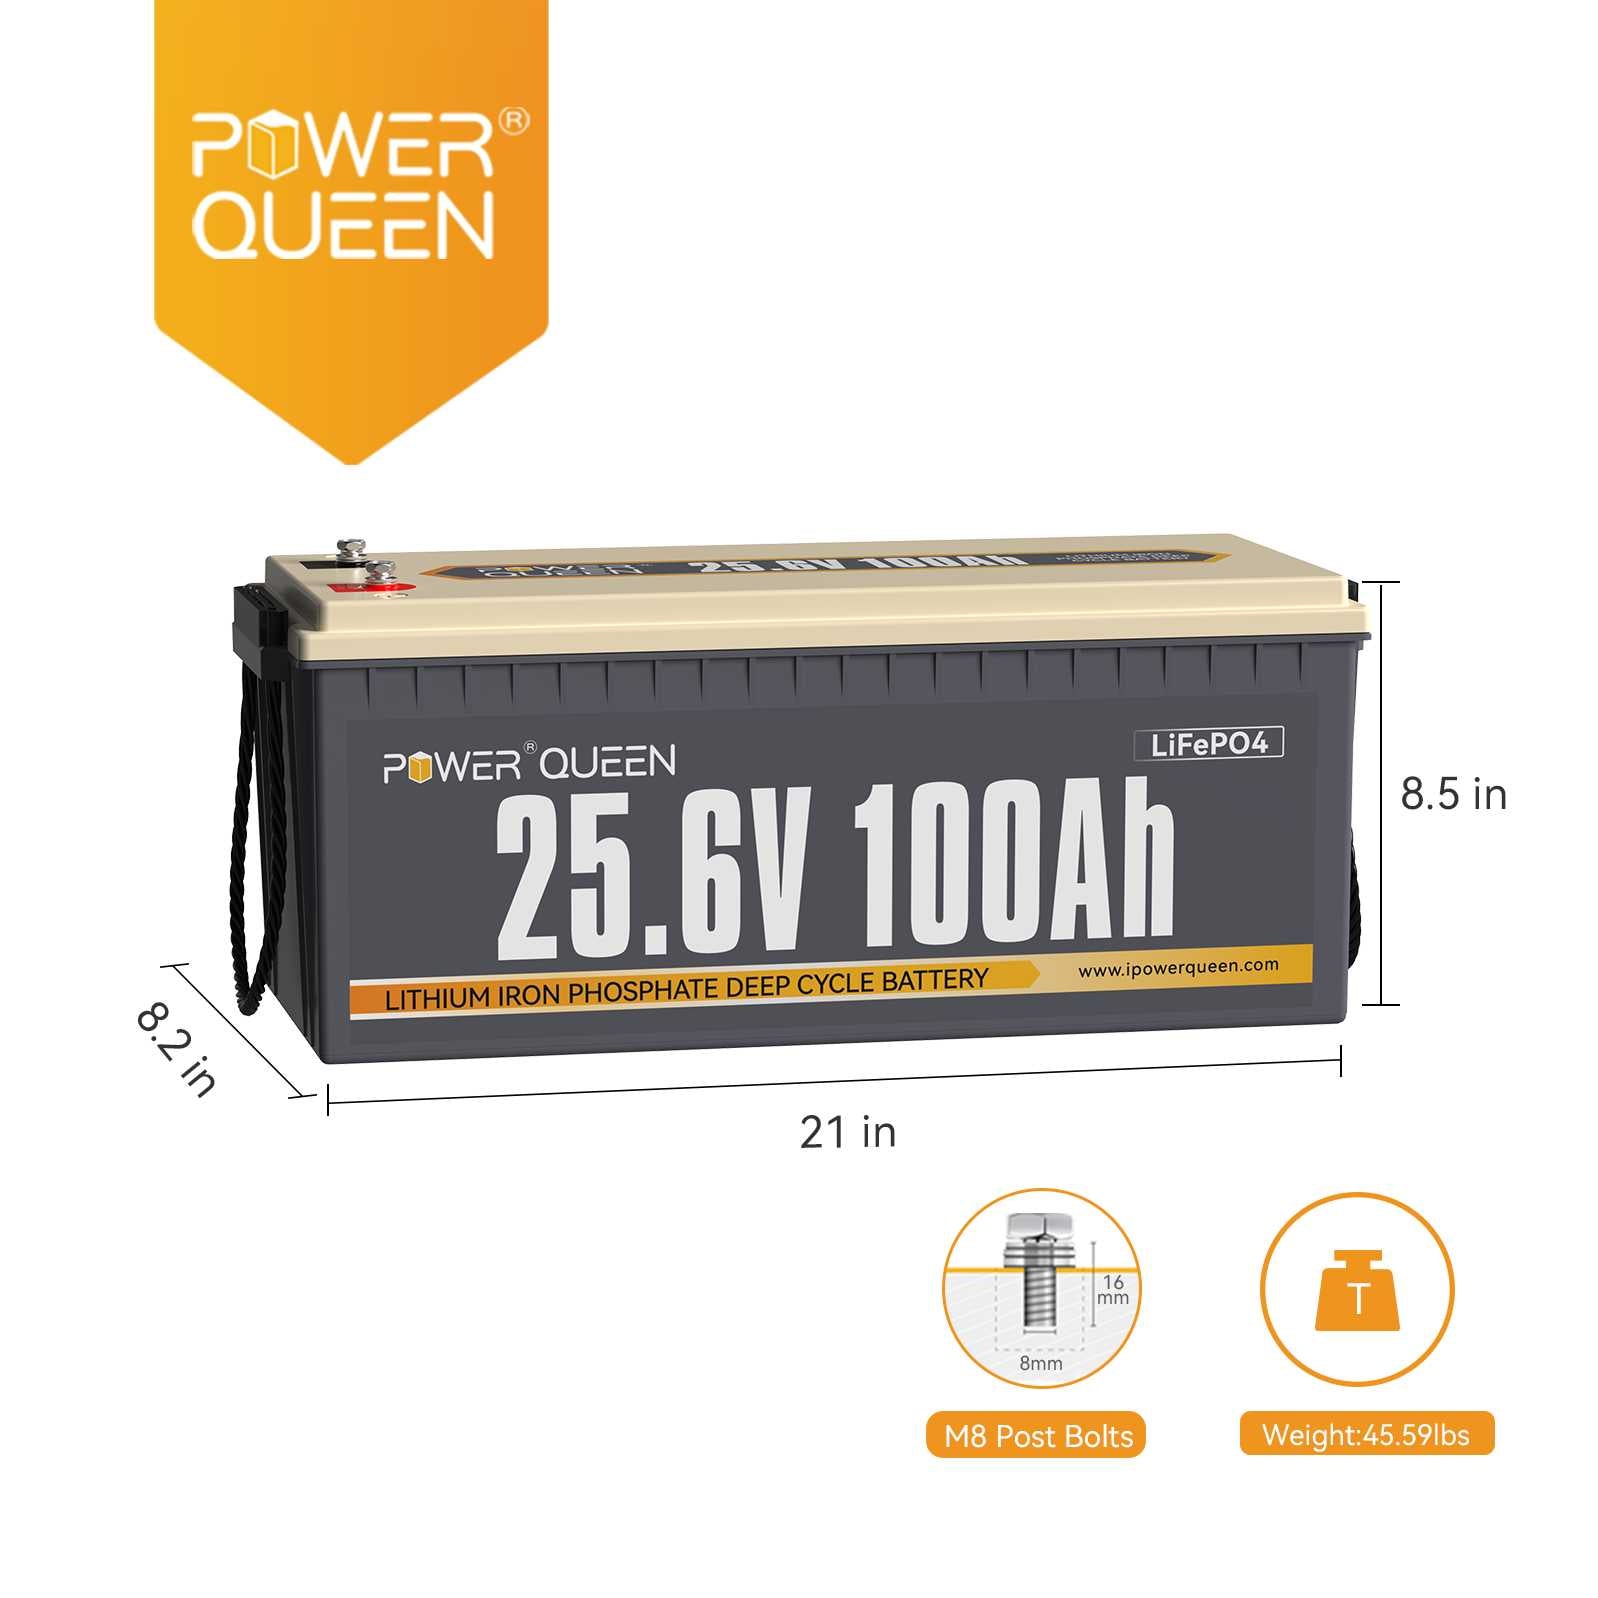 Power Queen 25.6V 100Ah LiFePO4 Battery, Built-in 100A BMS Power Queen